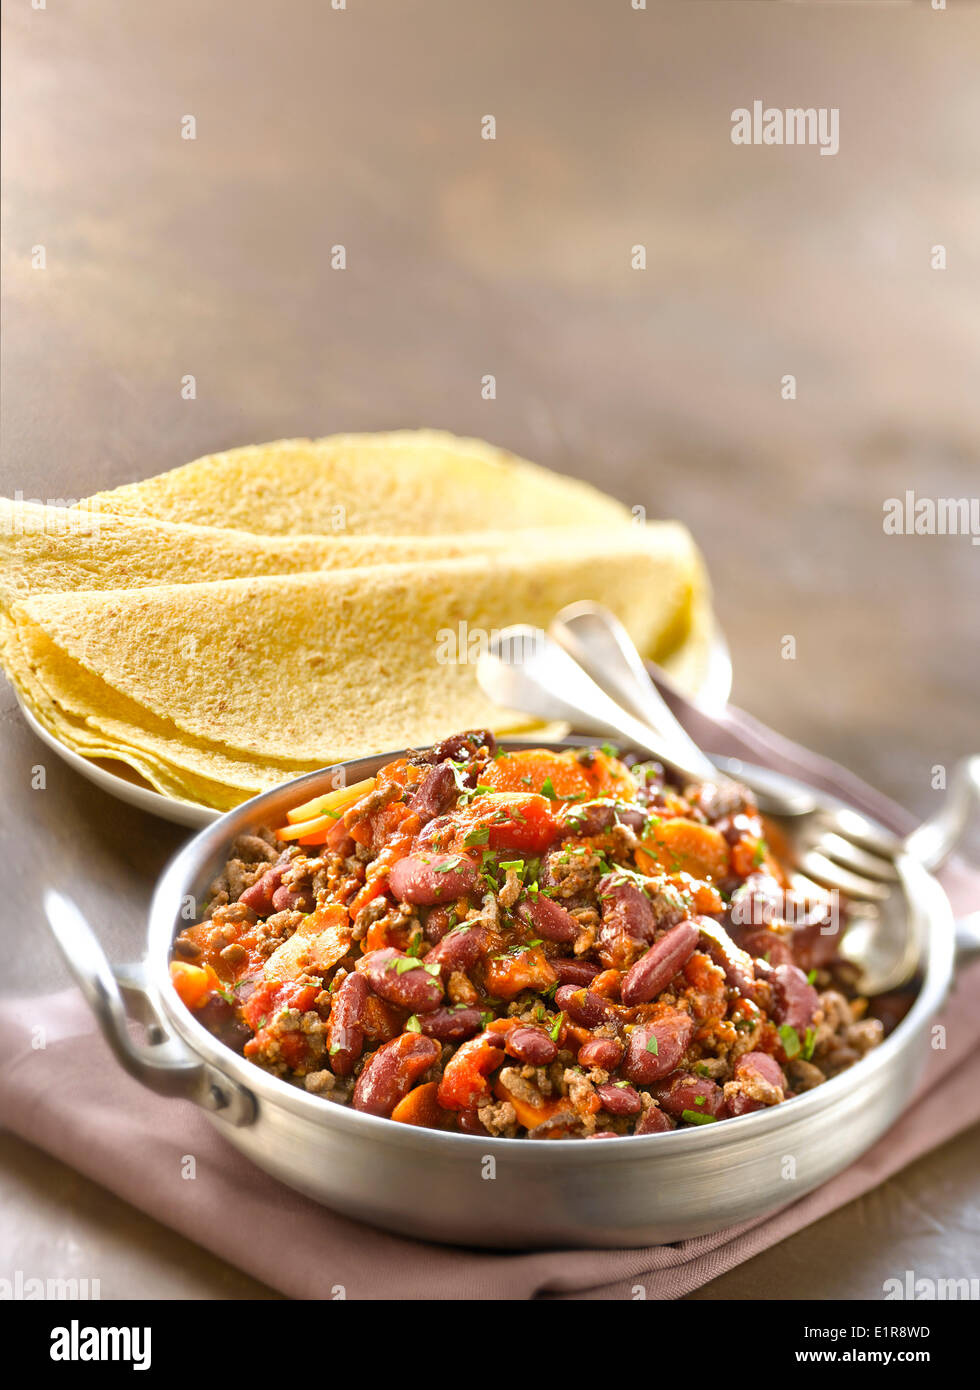 Chili con carne Stock Photo